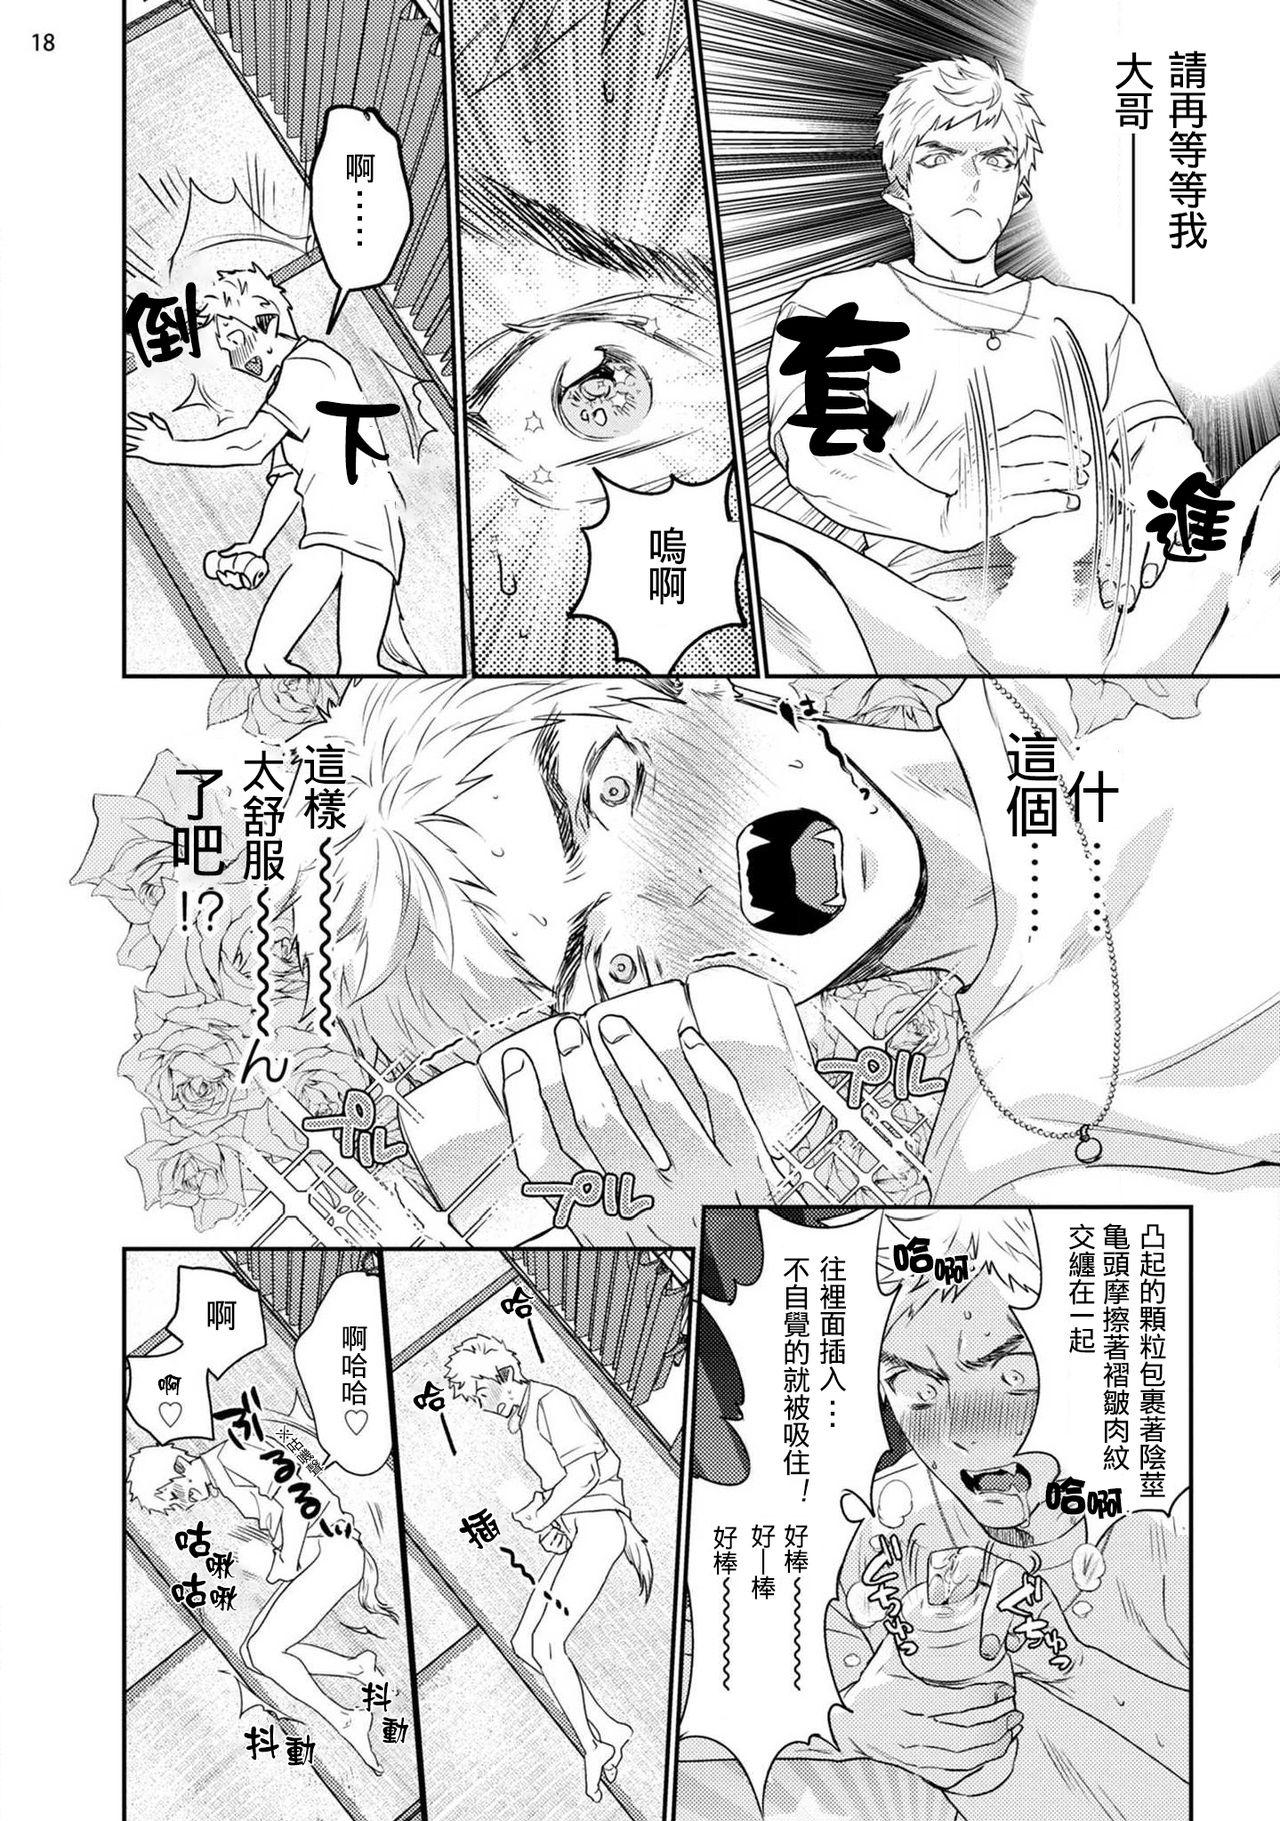 Gangimari Hatsujou Punchline #02 19